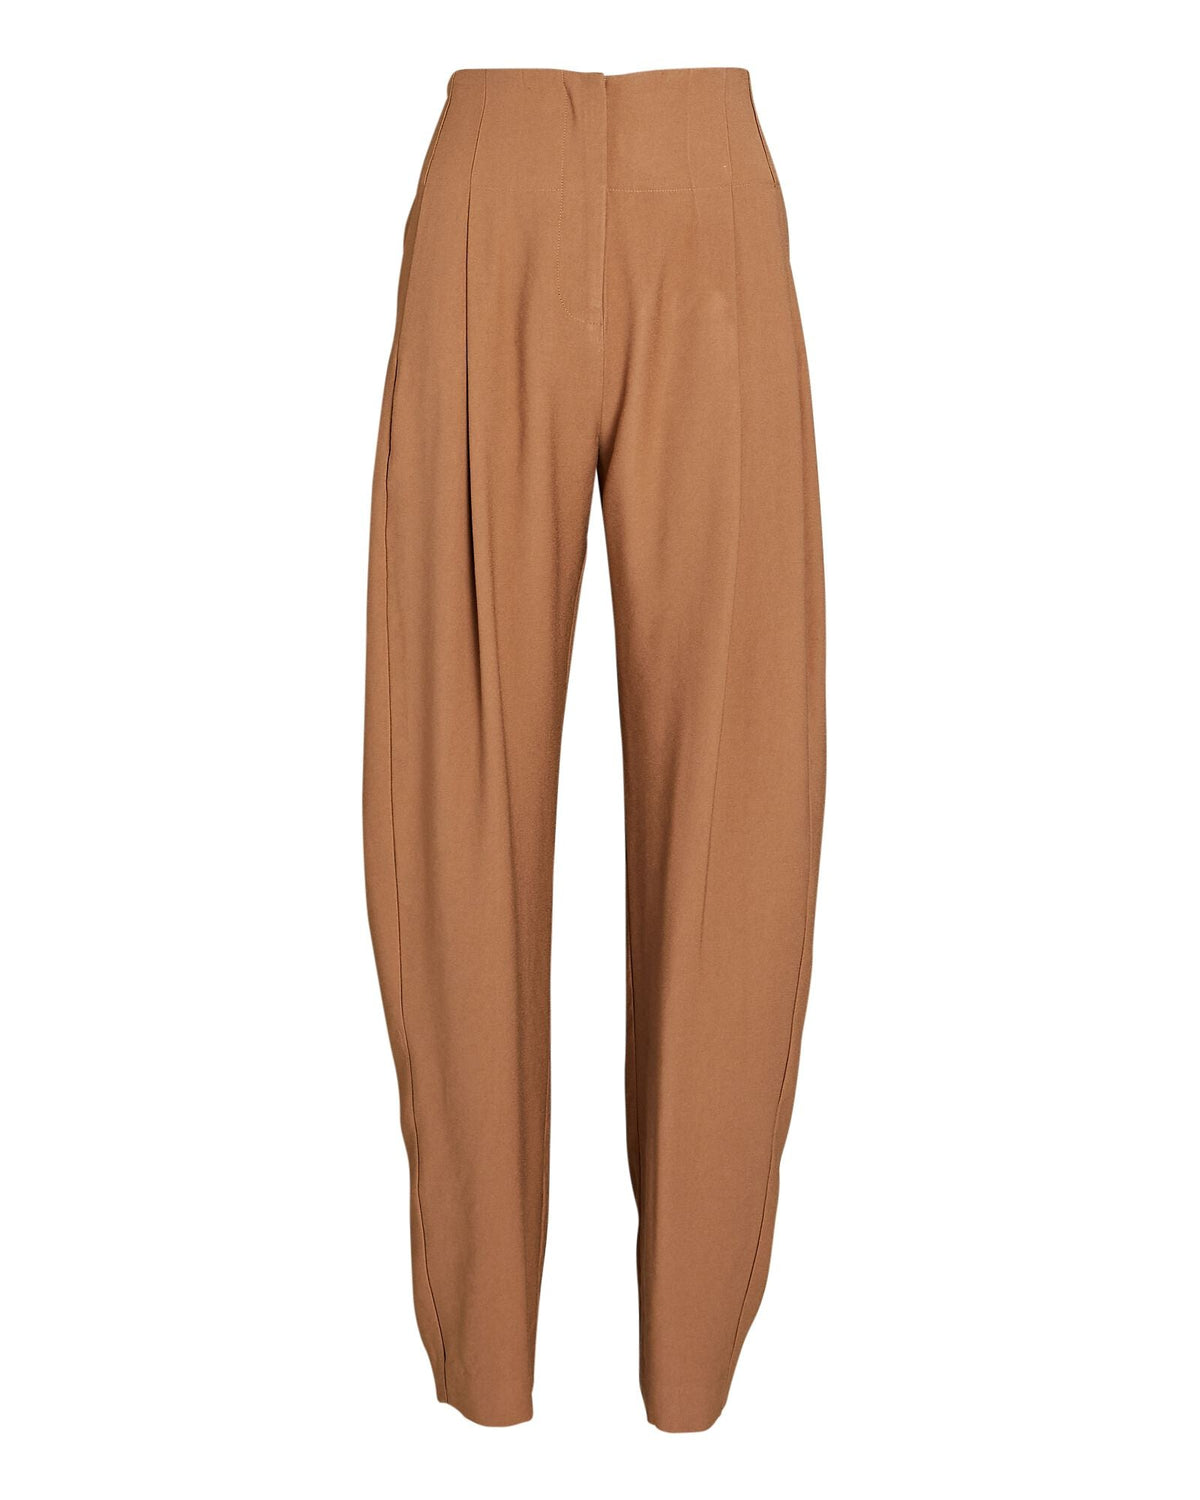 THE SEI Pants Pleat Trouser, Chai Soho-Boutique